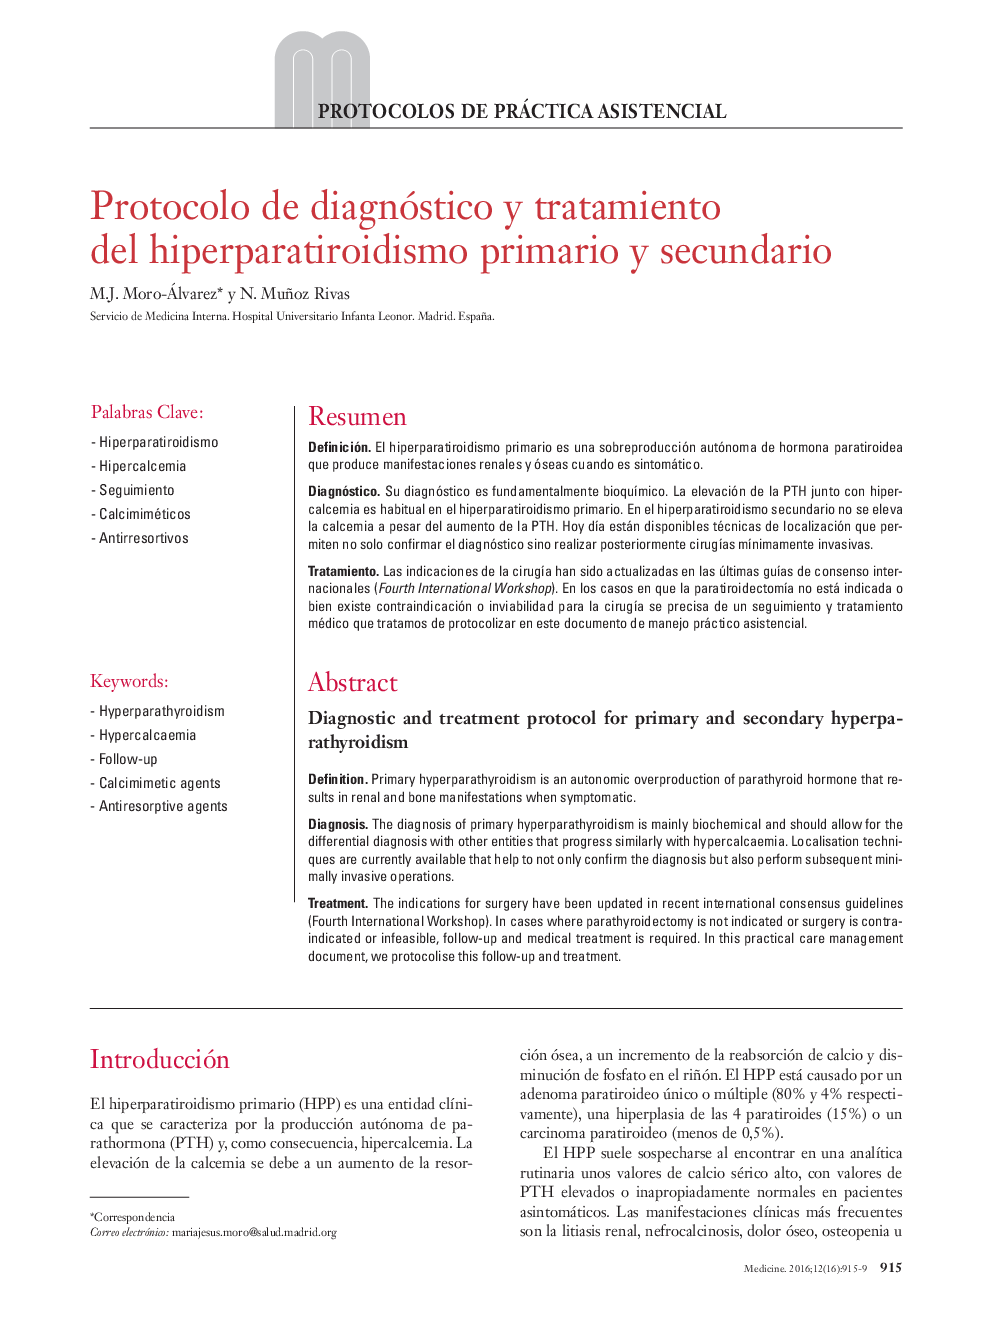 Protocolo de diagnóstico y tratamiento del hiperparatiroidismo primario y secundario